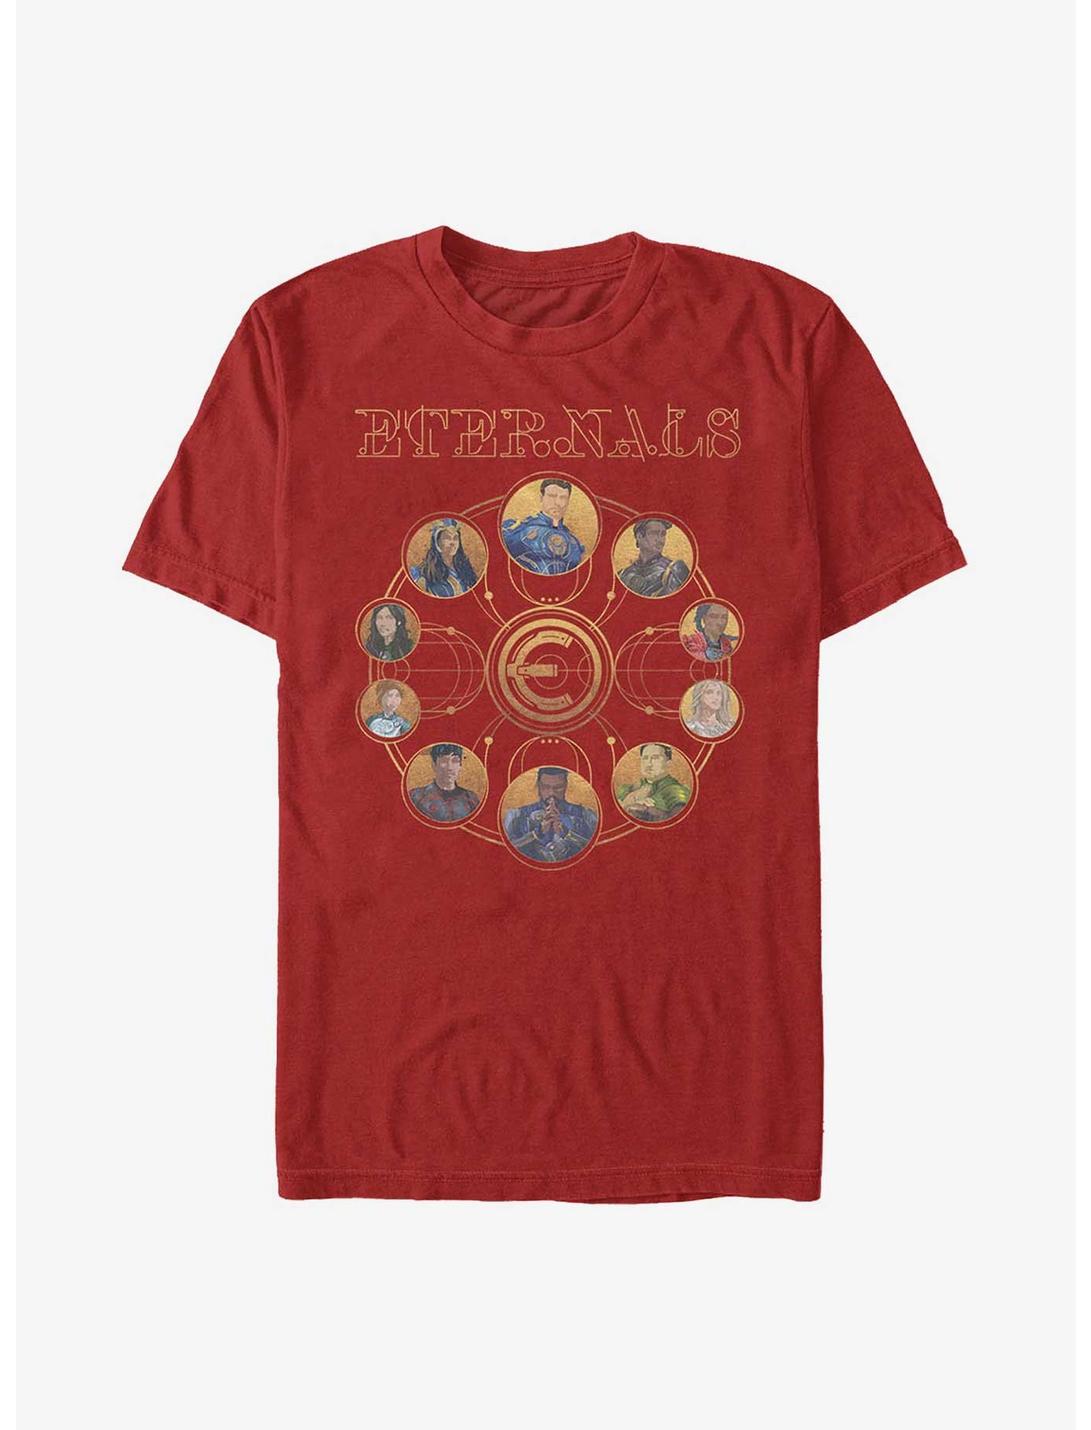 Marvel Eternals Eternals Circular Gold T-Shirt, , hi-res